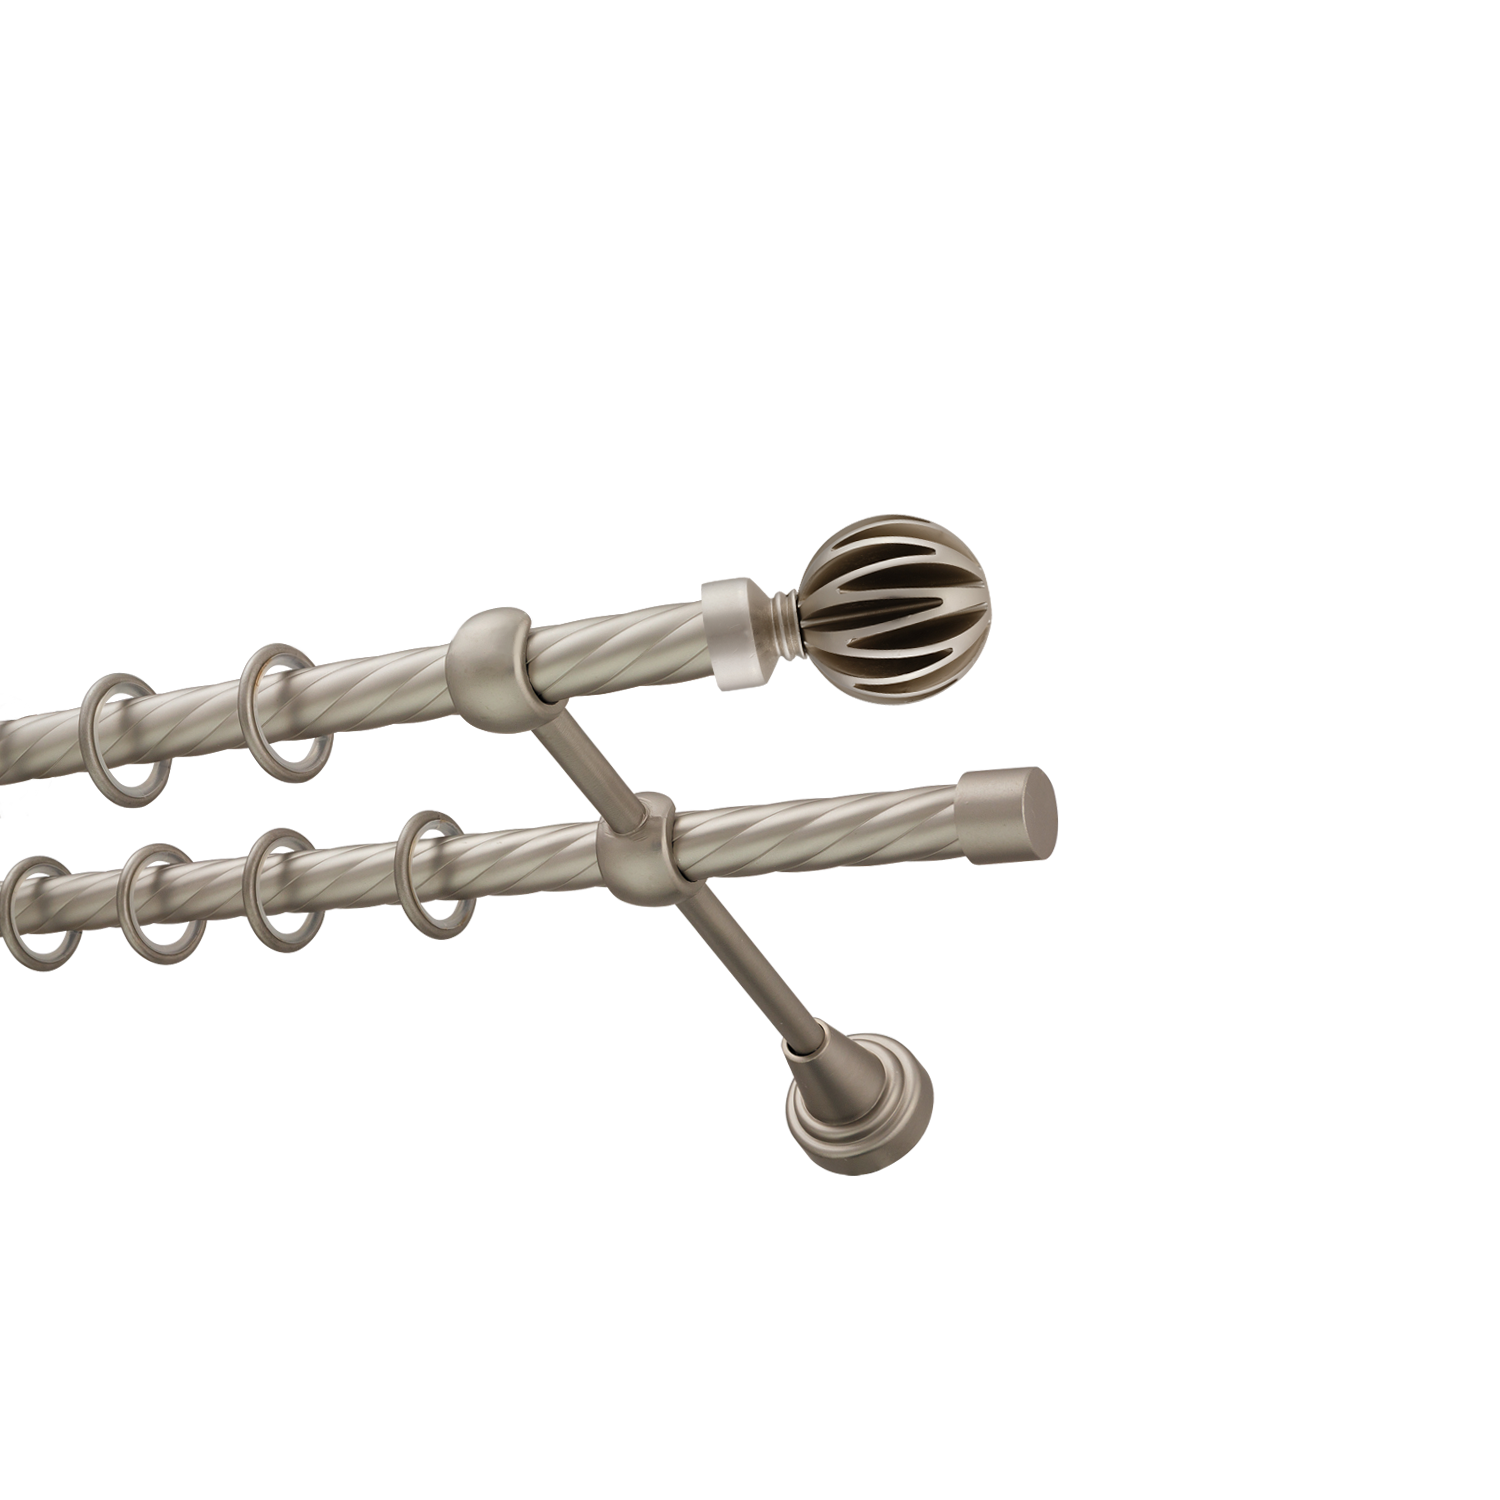 Металлический карниз для штор Шафран, двухрядный 16/16 мм, сталь, витая штанга, длина 200 см - фото Wikidecor.ru